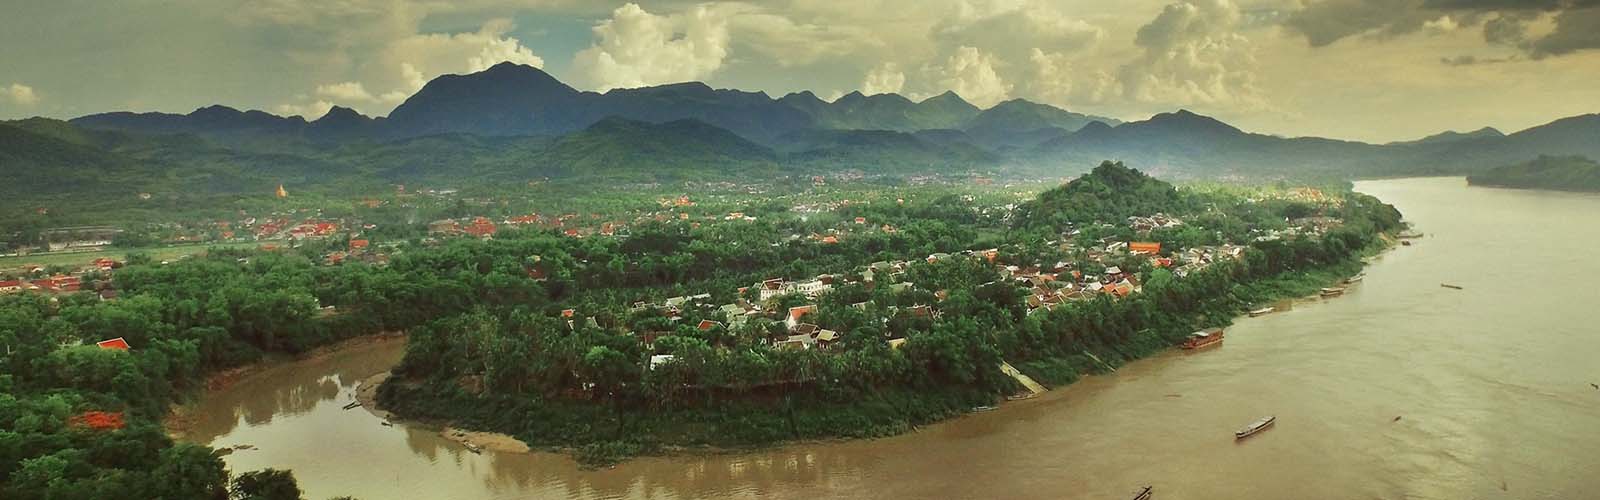 Voyage Laos - Voyage sur mesure avec une agence locale